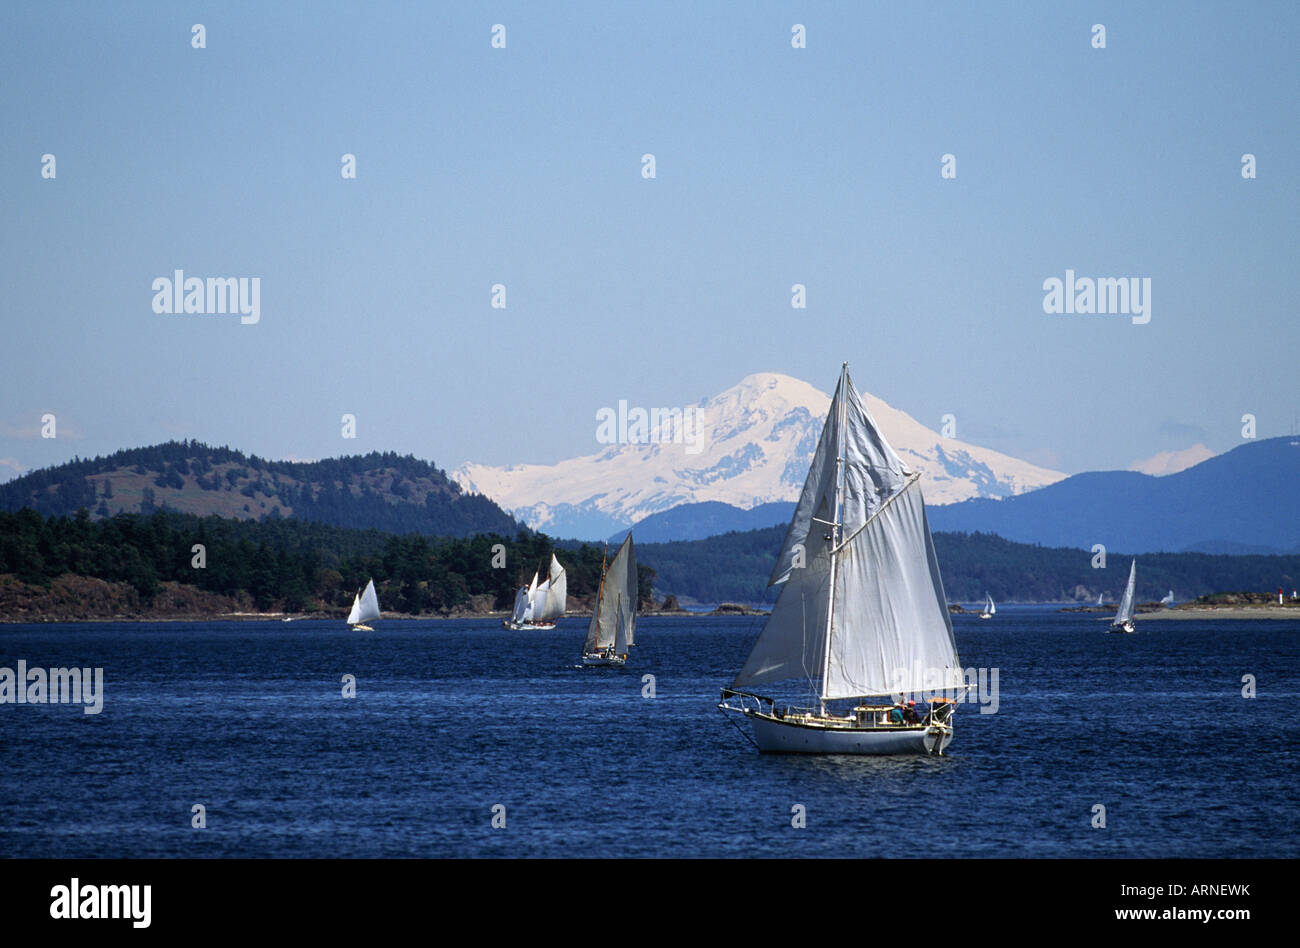 Sidney vista, avec gaff rigged sail race et Mt Baker, l'île de Vancouver, Colombie-Britannique, Canada. Banque D'Images